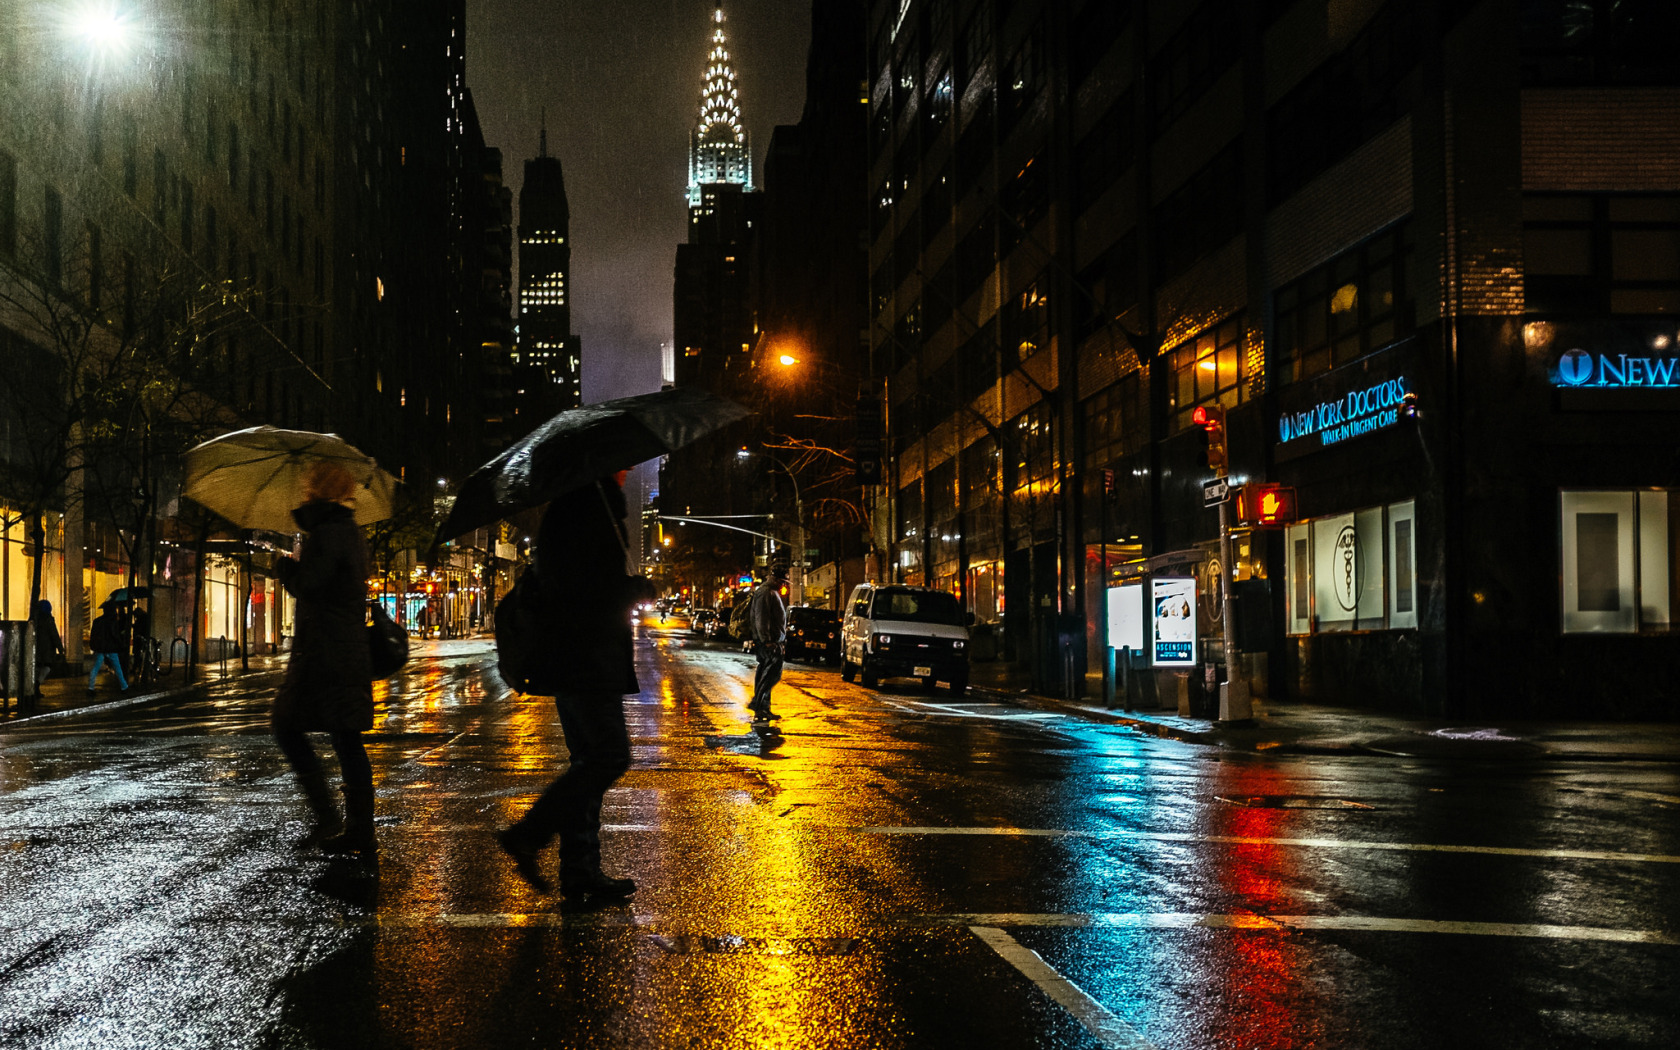 Нью Йорк Найт стрит. Ночной дождливый Нью_ Нью Йорк. Ливень в Нью-Йорке. Нью-Йорк улицы ночью.